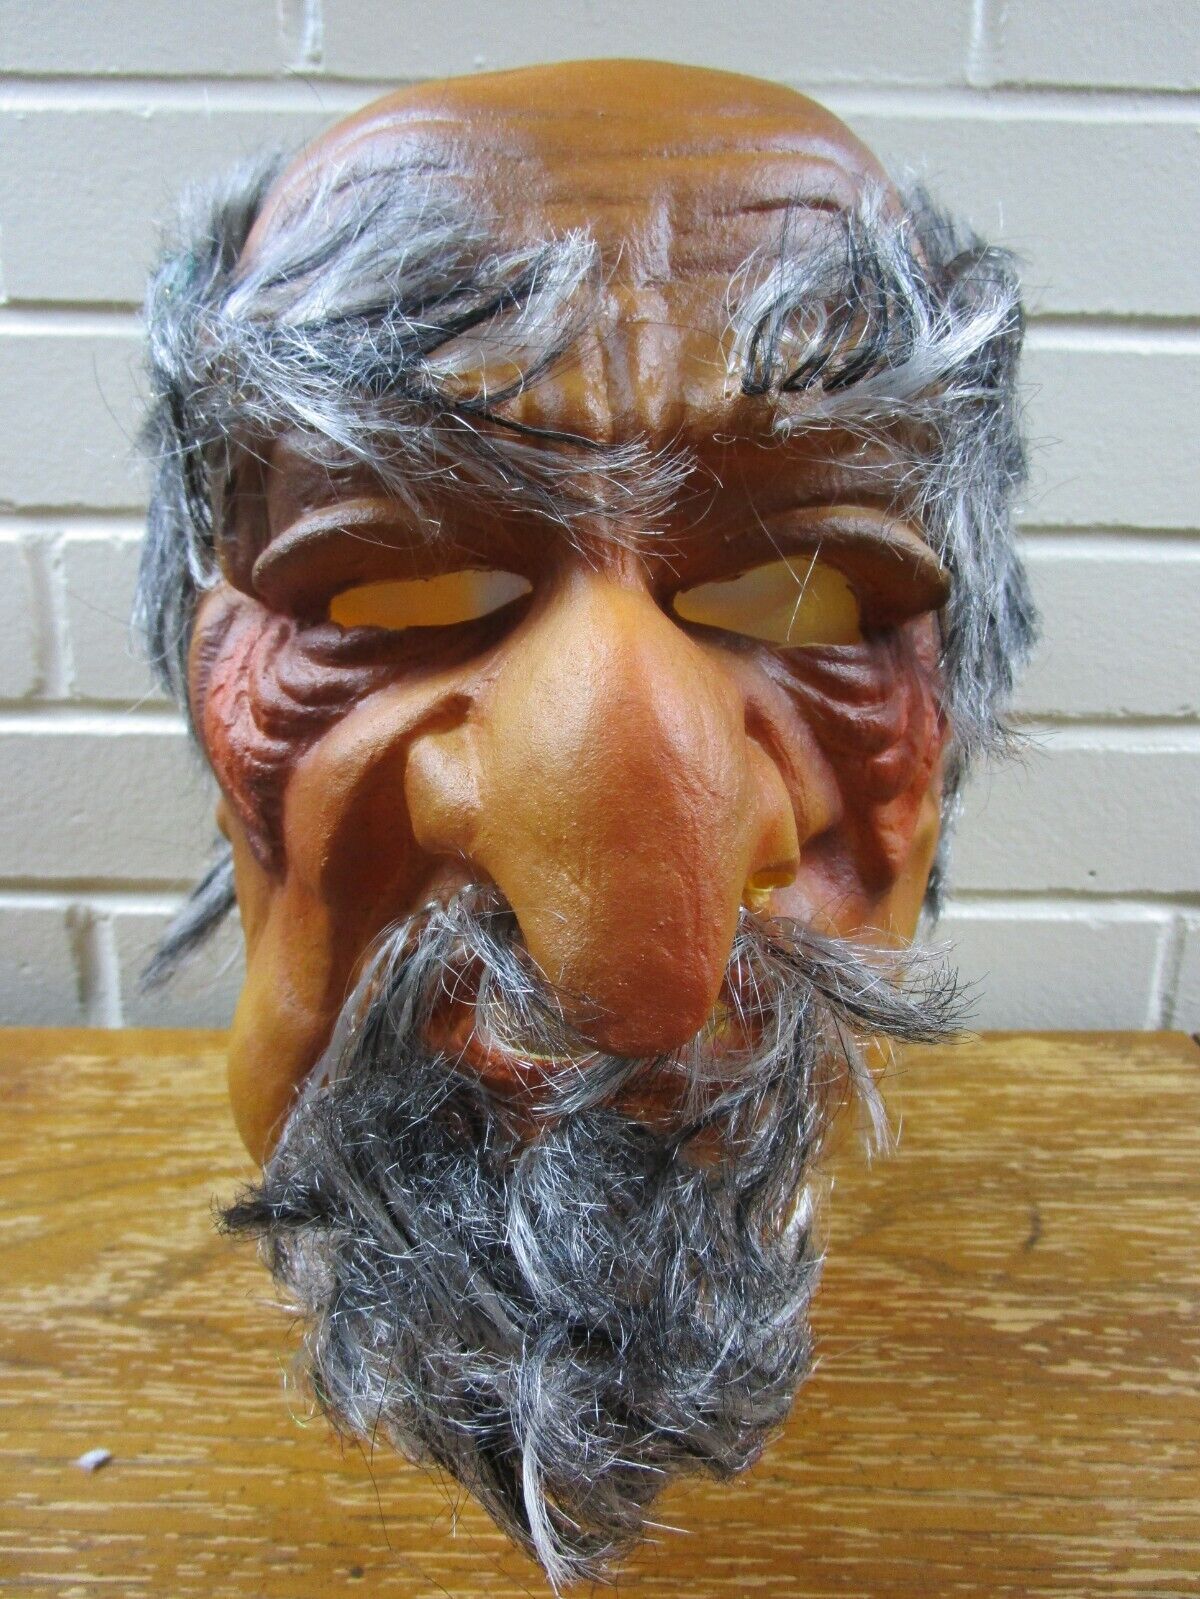 VTG 1970's Rubber Halloween Monster Mask w/Hair Horror Old Bald Man